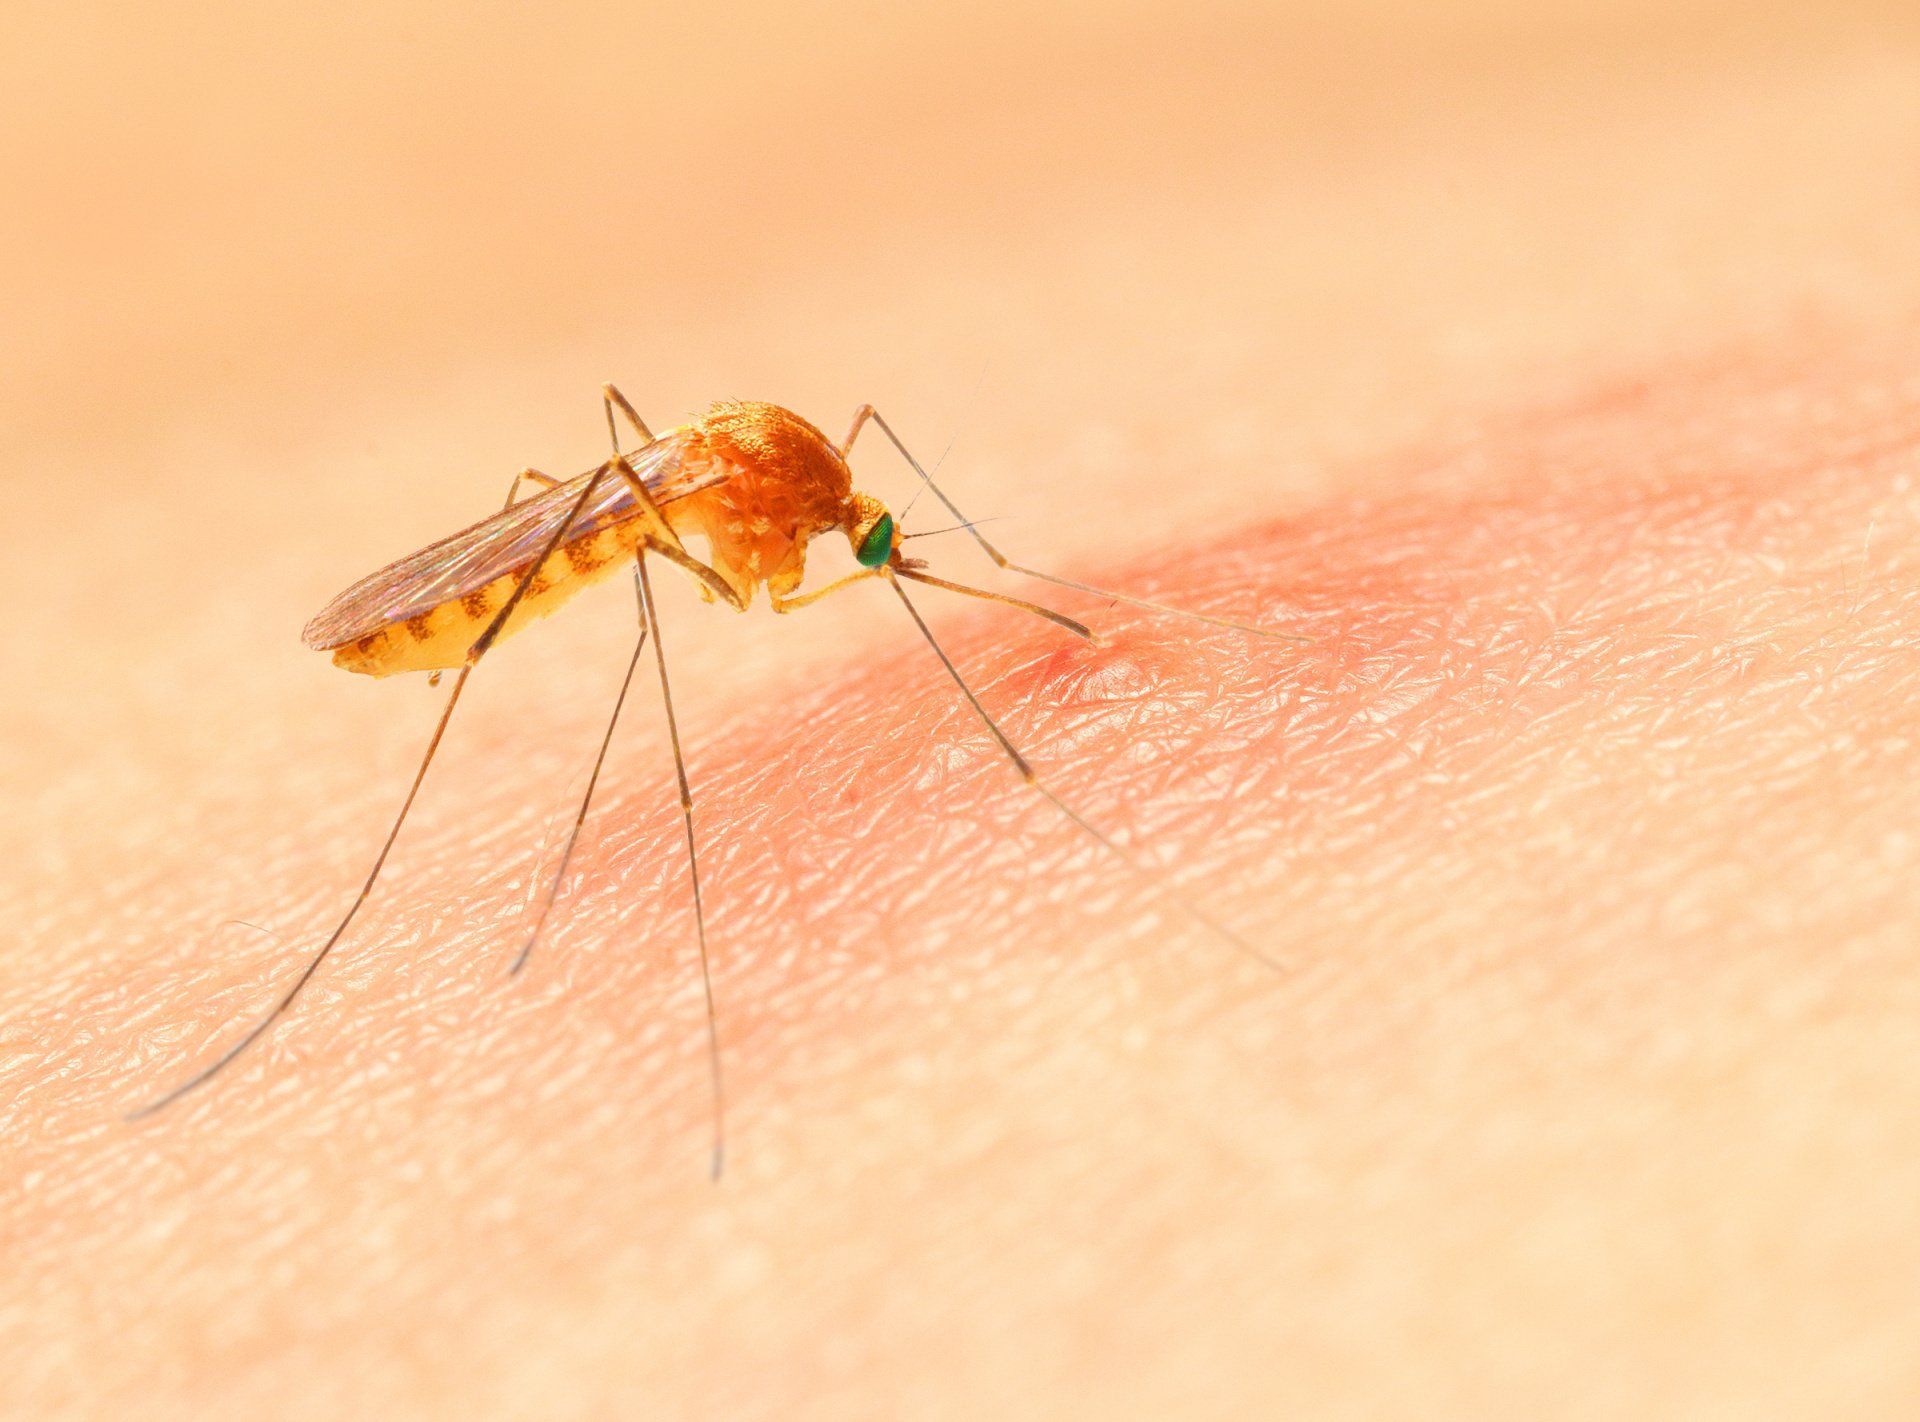 Оранжевый комар. Укус малярии малярийный комар. Комар желтолихорадочный укус. Укус комара под микроскопом.